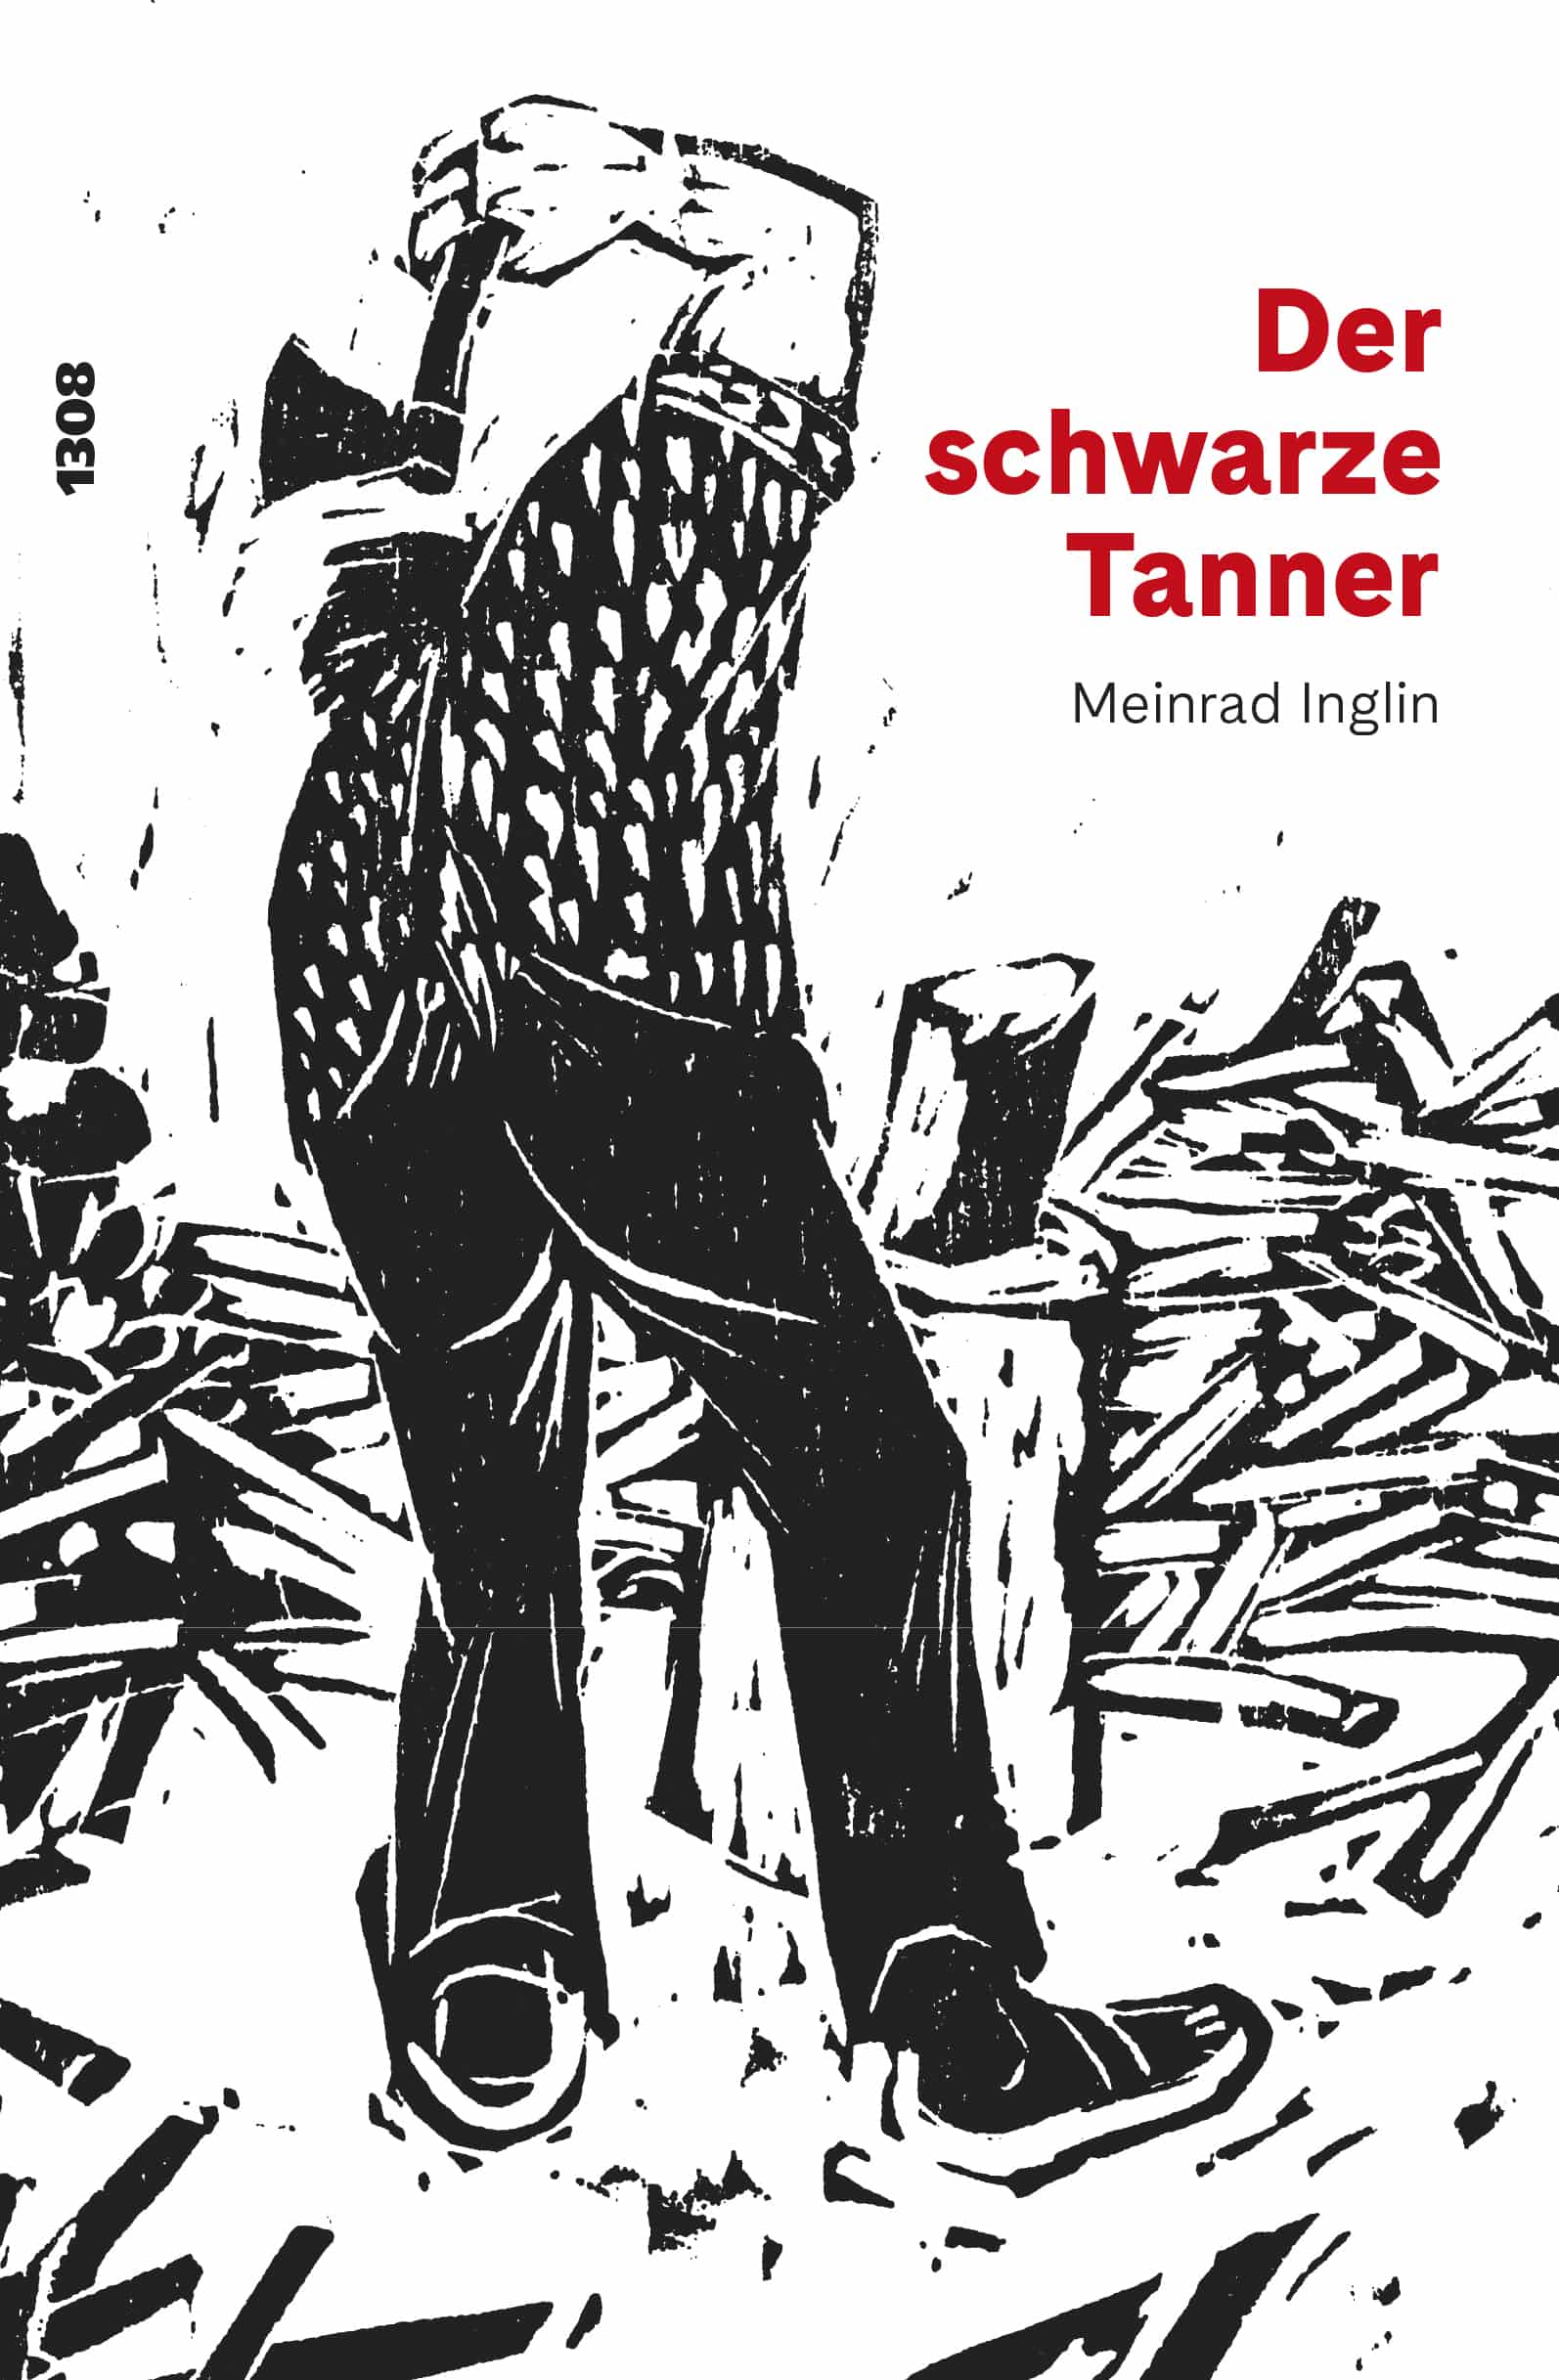 Der schwarze Tanner ein Buch von Meinrad Inglin, Illustration von Bruno Gentinetta, SJW Verlag, Schweizer Literatur, Politik